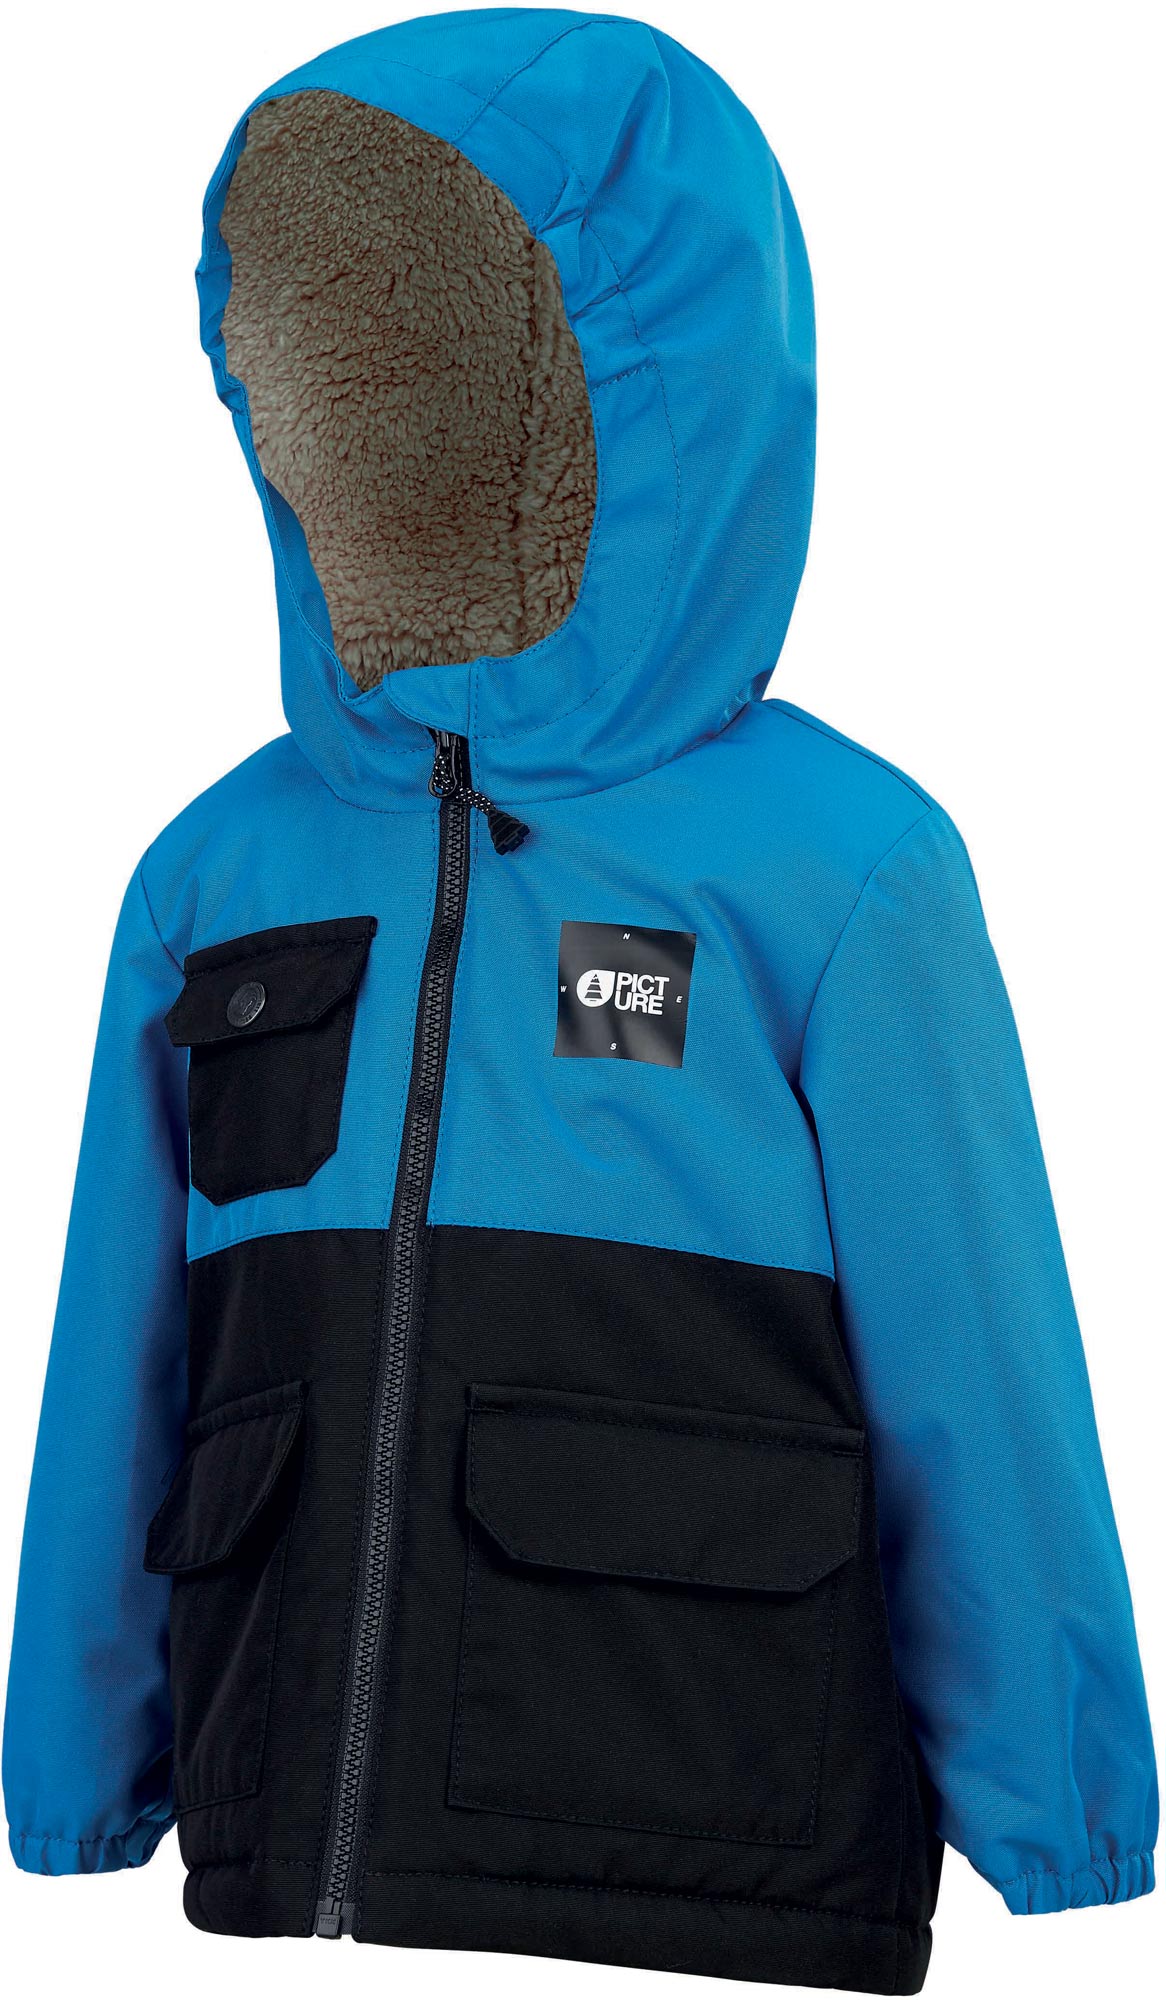 Children's winter jacket